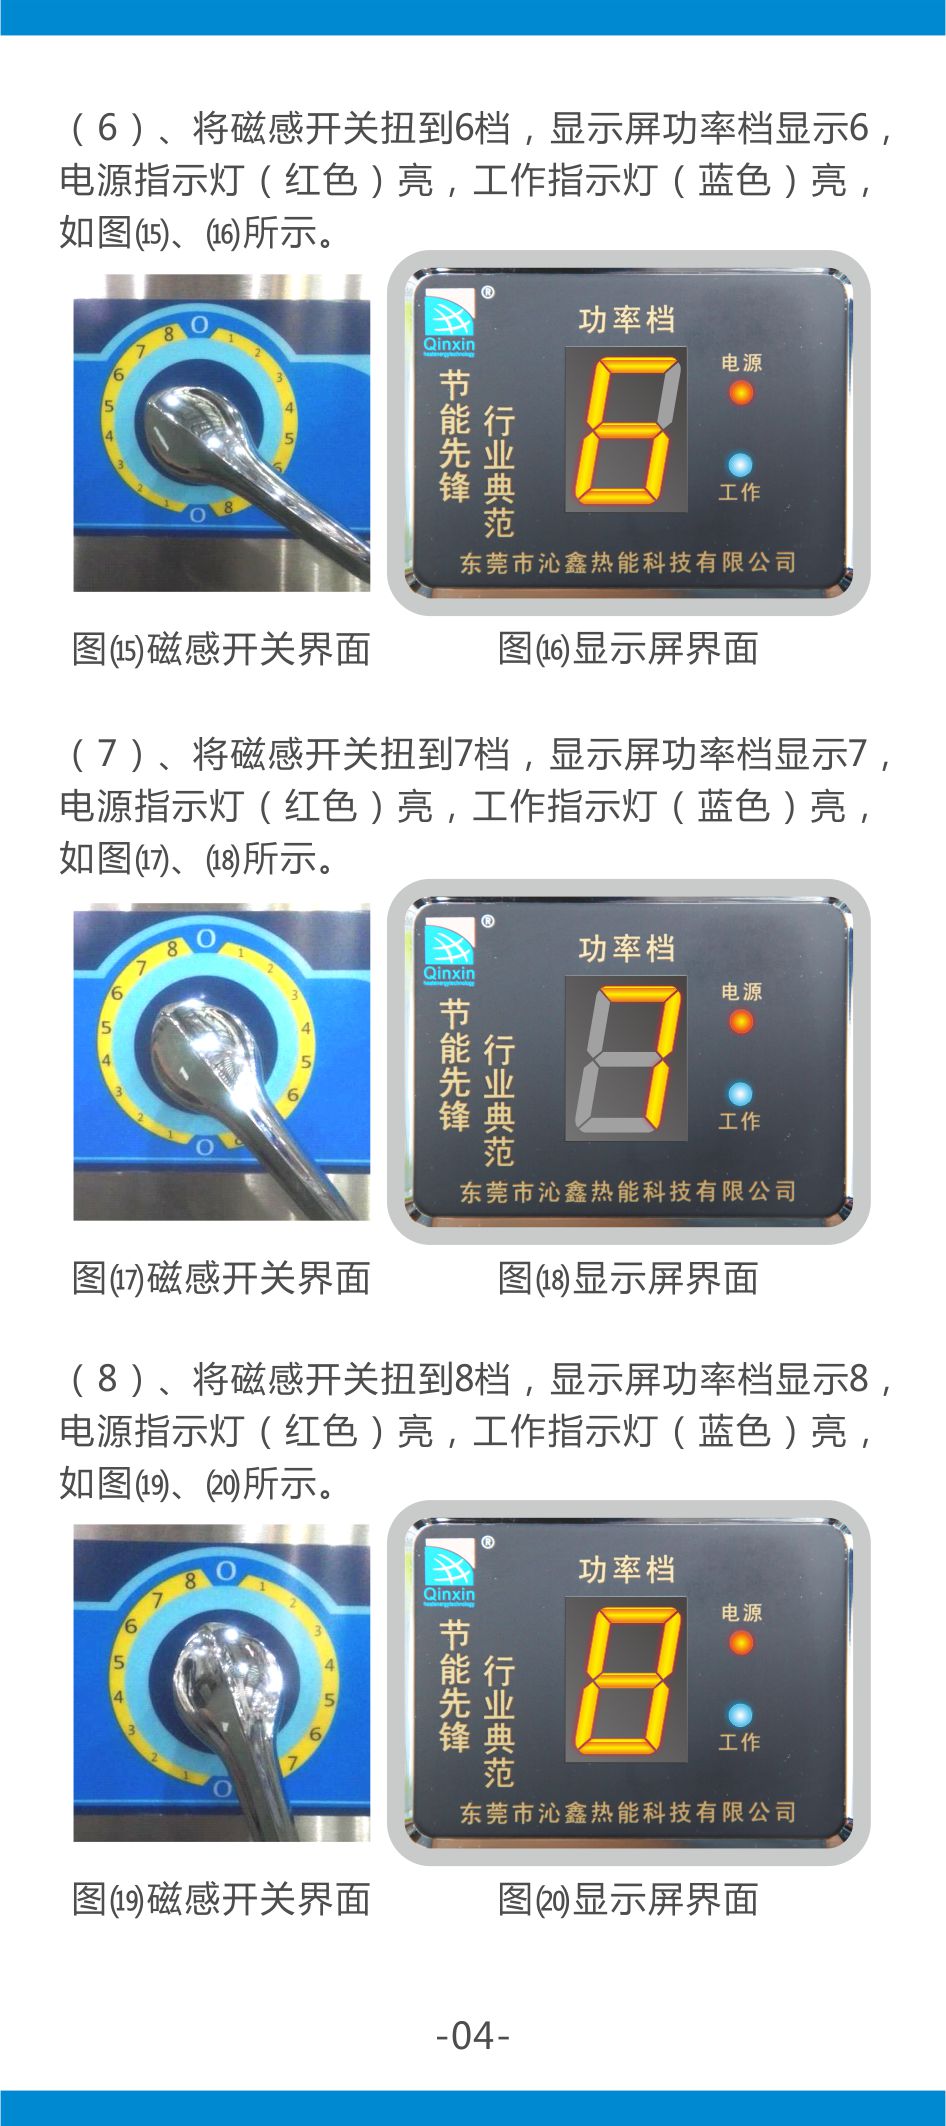 沁鑫商用电磁炉第一代说明书-5